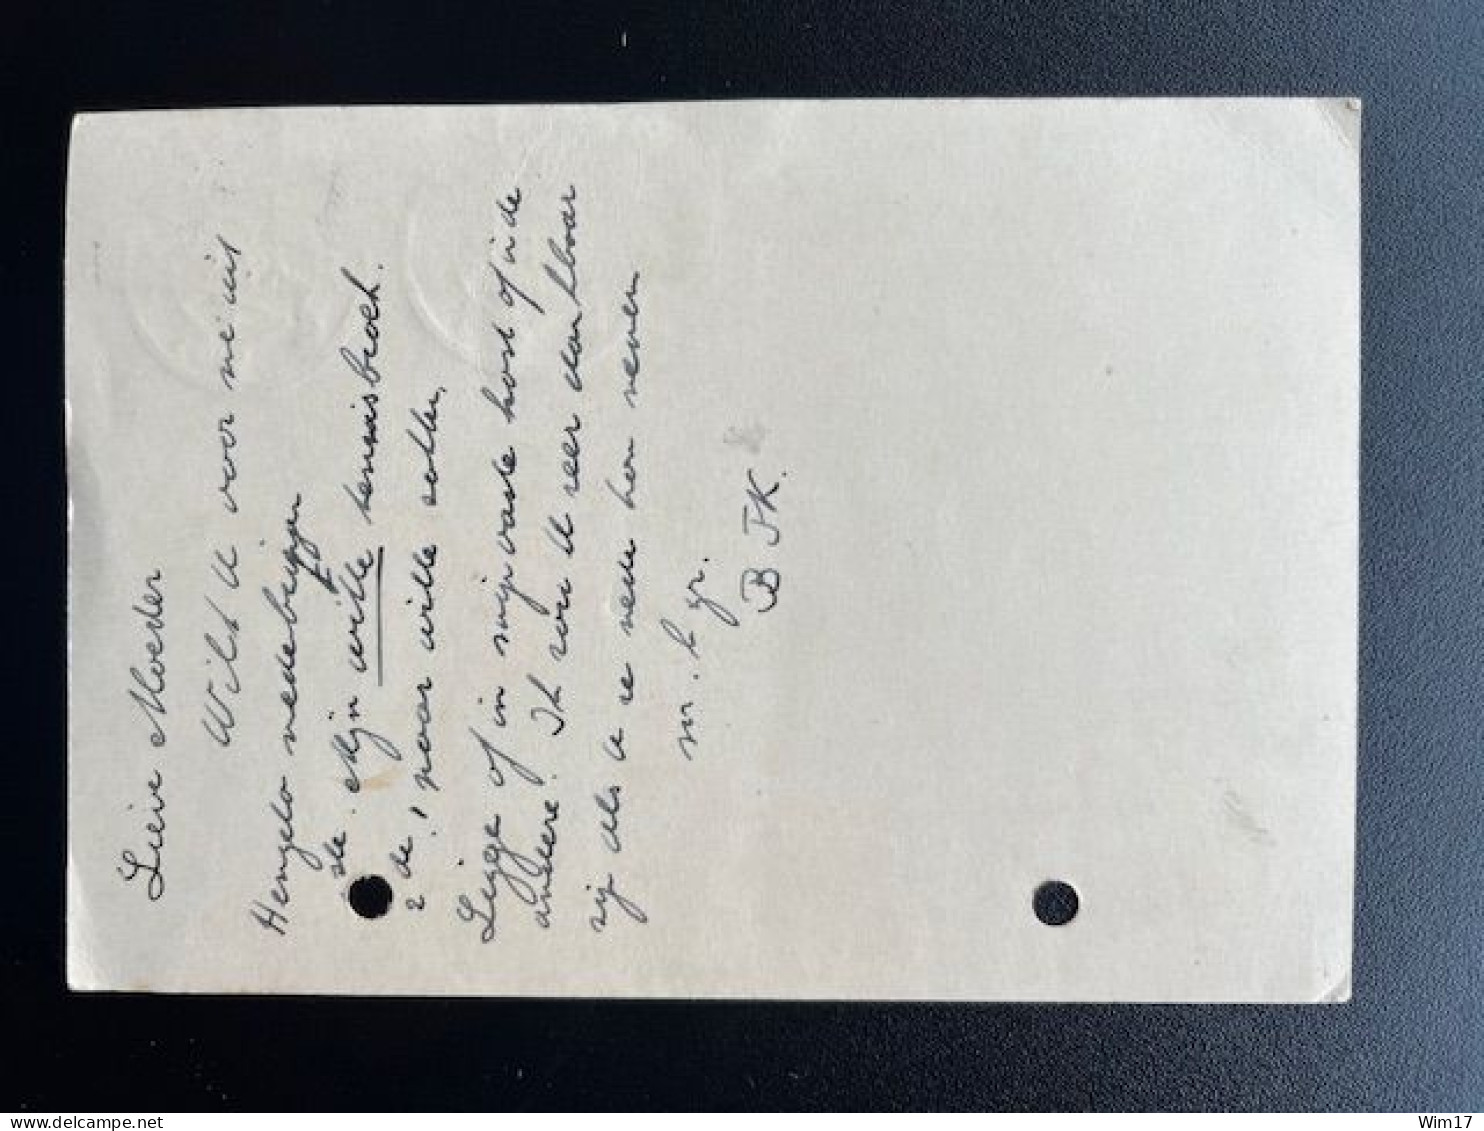 NETHERLANDS 1930 POSTCARD DORDRECHT TO HENGELO (OV) 04-06-1930 NEDERLAND - Briefe U. Dokumente